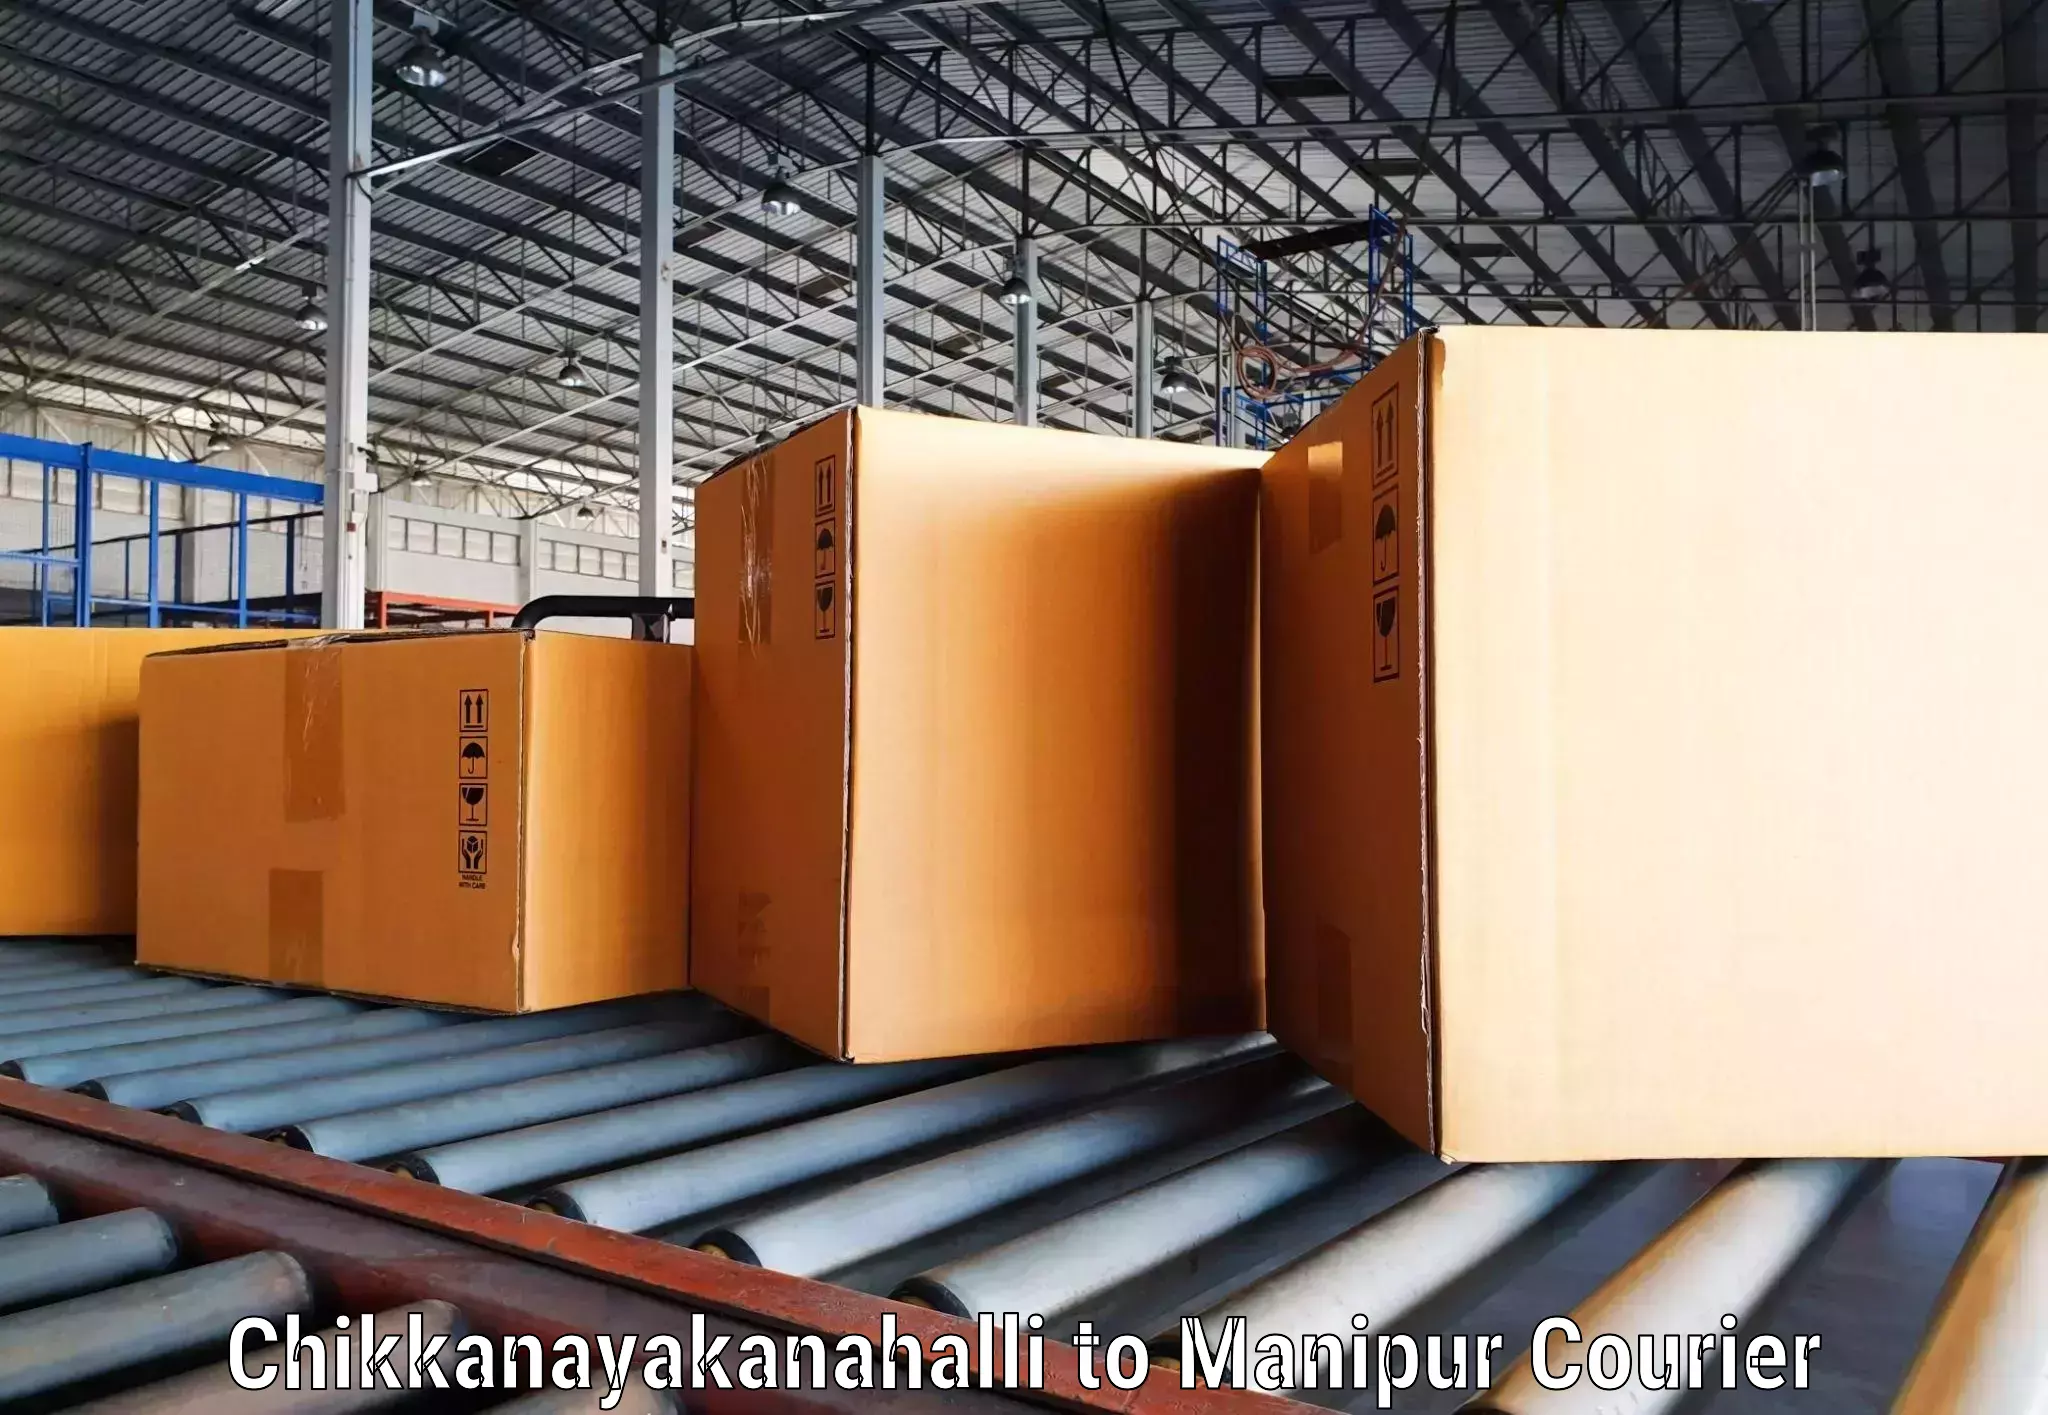 High-performance logistics Chikkanayakanahalli to Kangpokpi